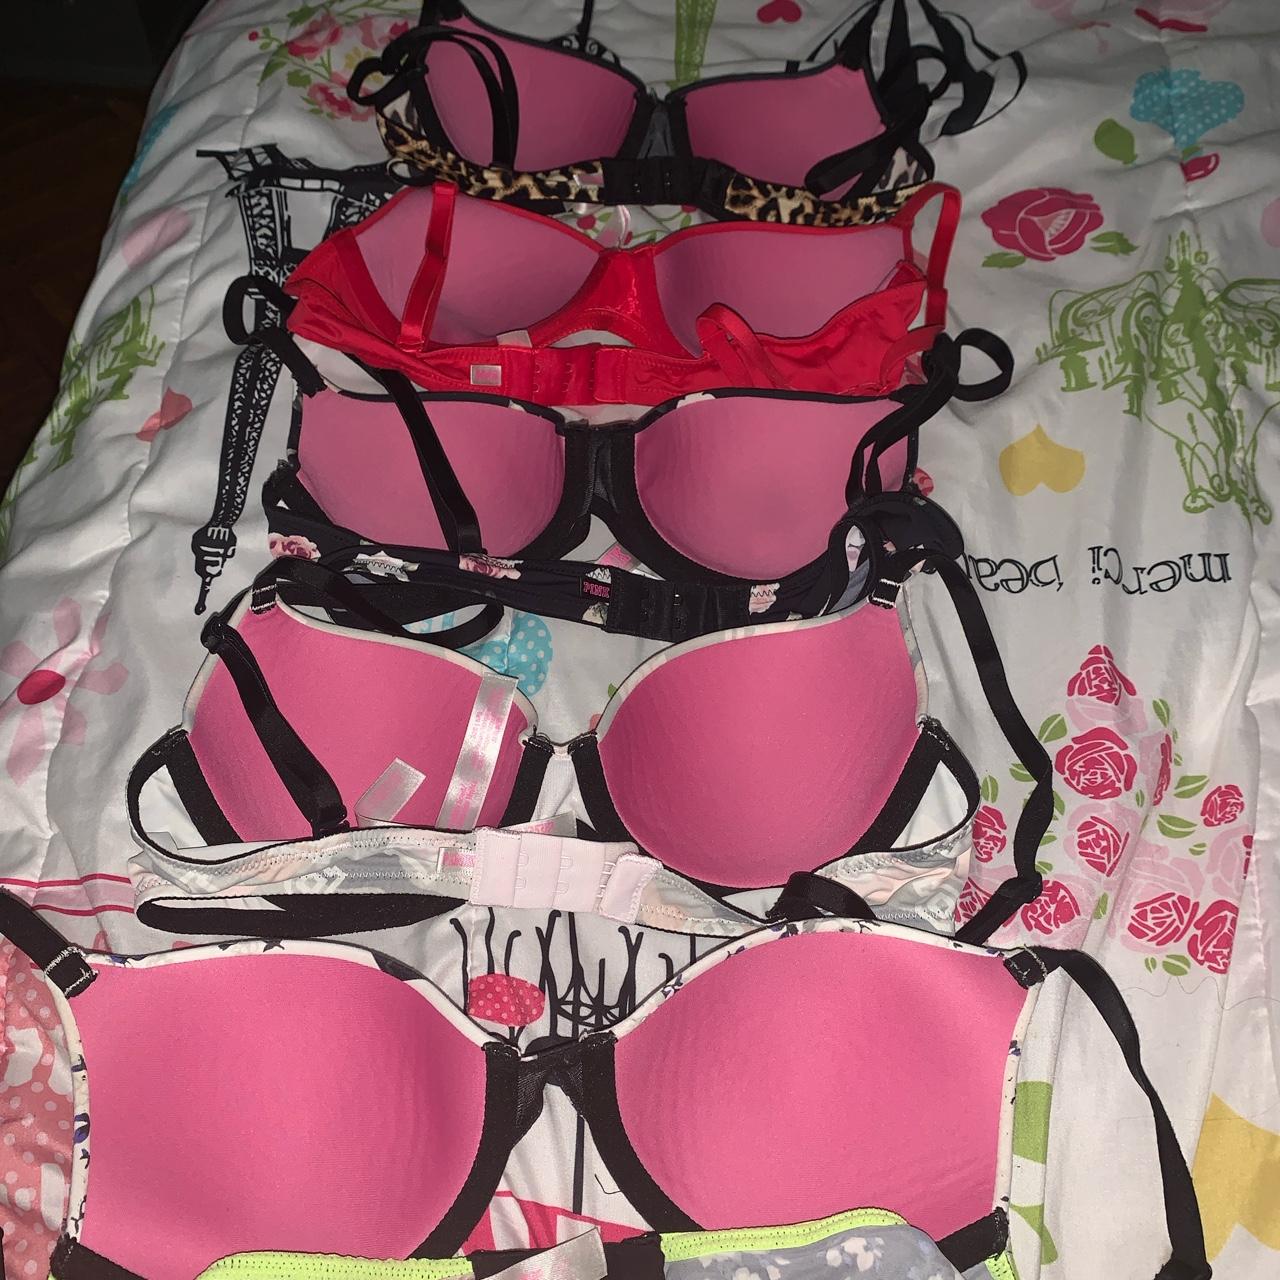 3 Sz 32A Victoria's Secret/PINK bras, bundle  Pink bra, Cute bras,  Victoria secret pink bras